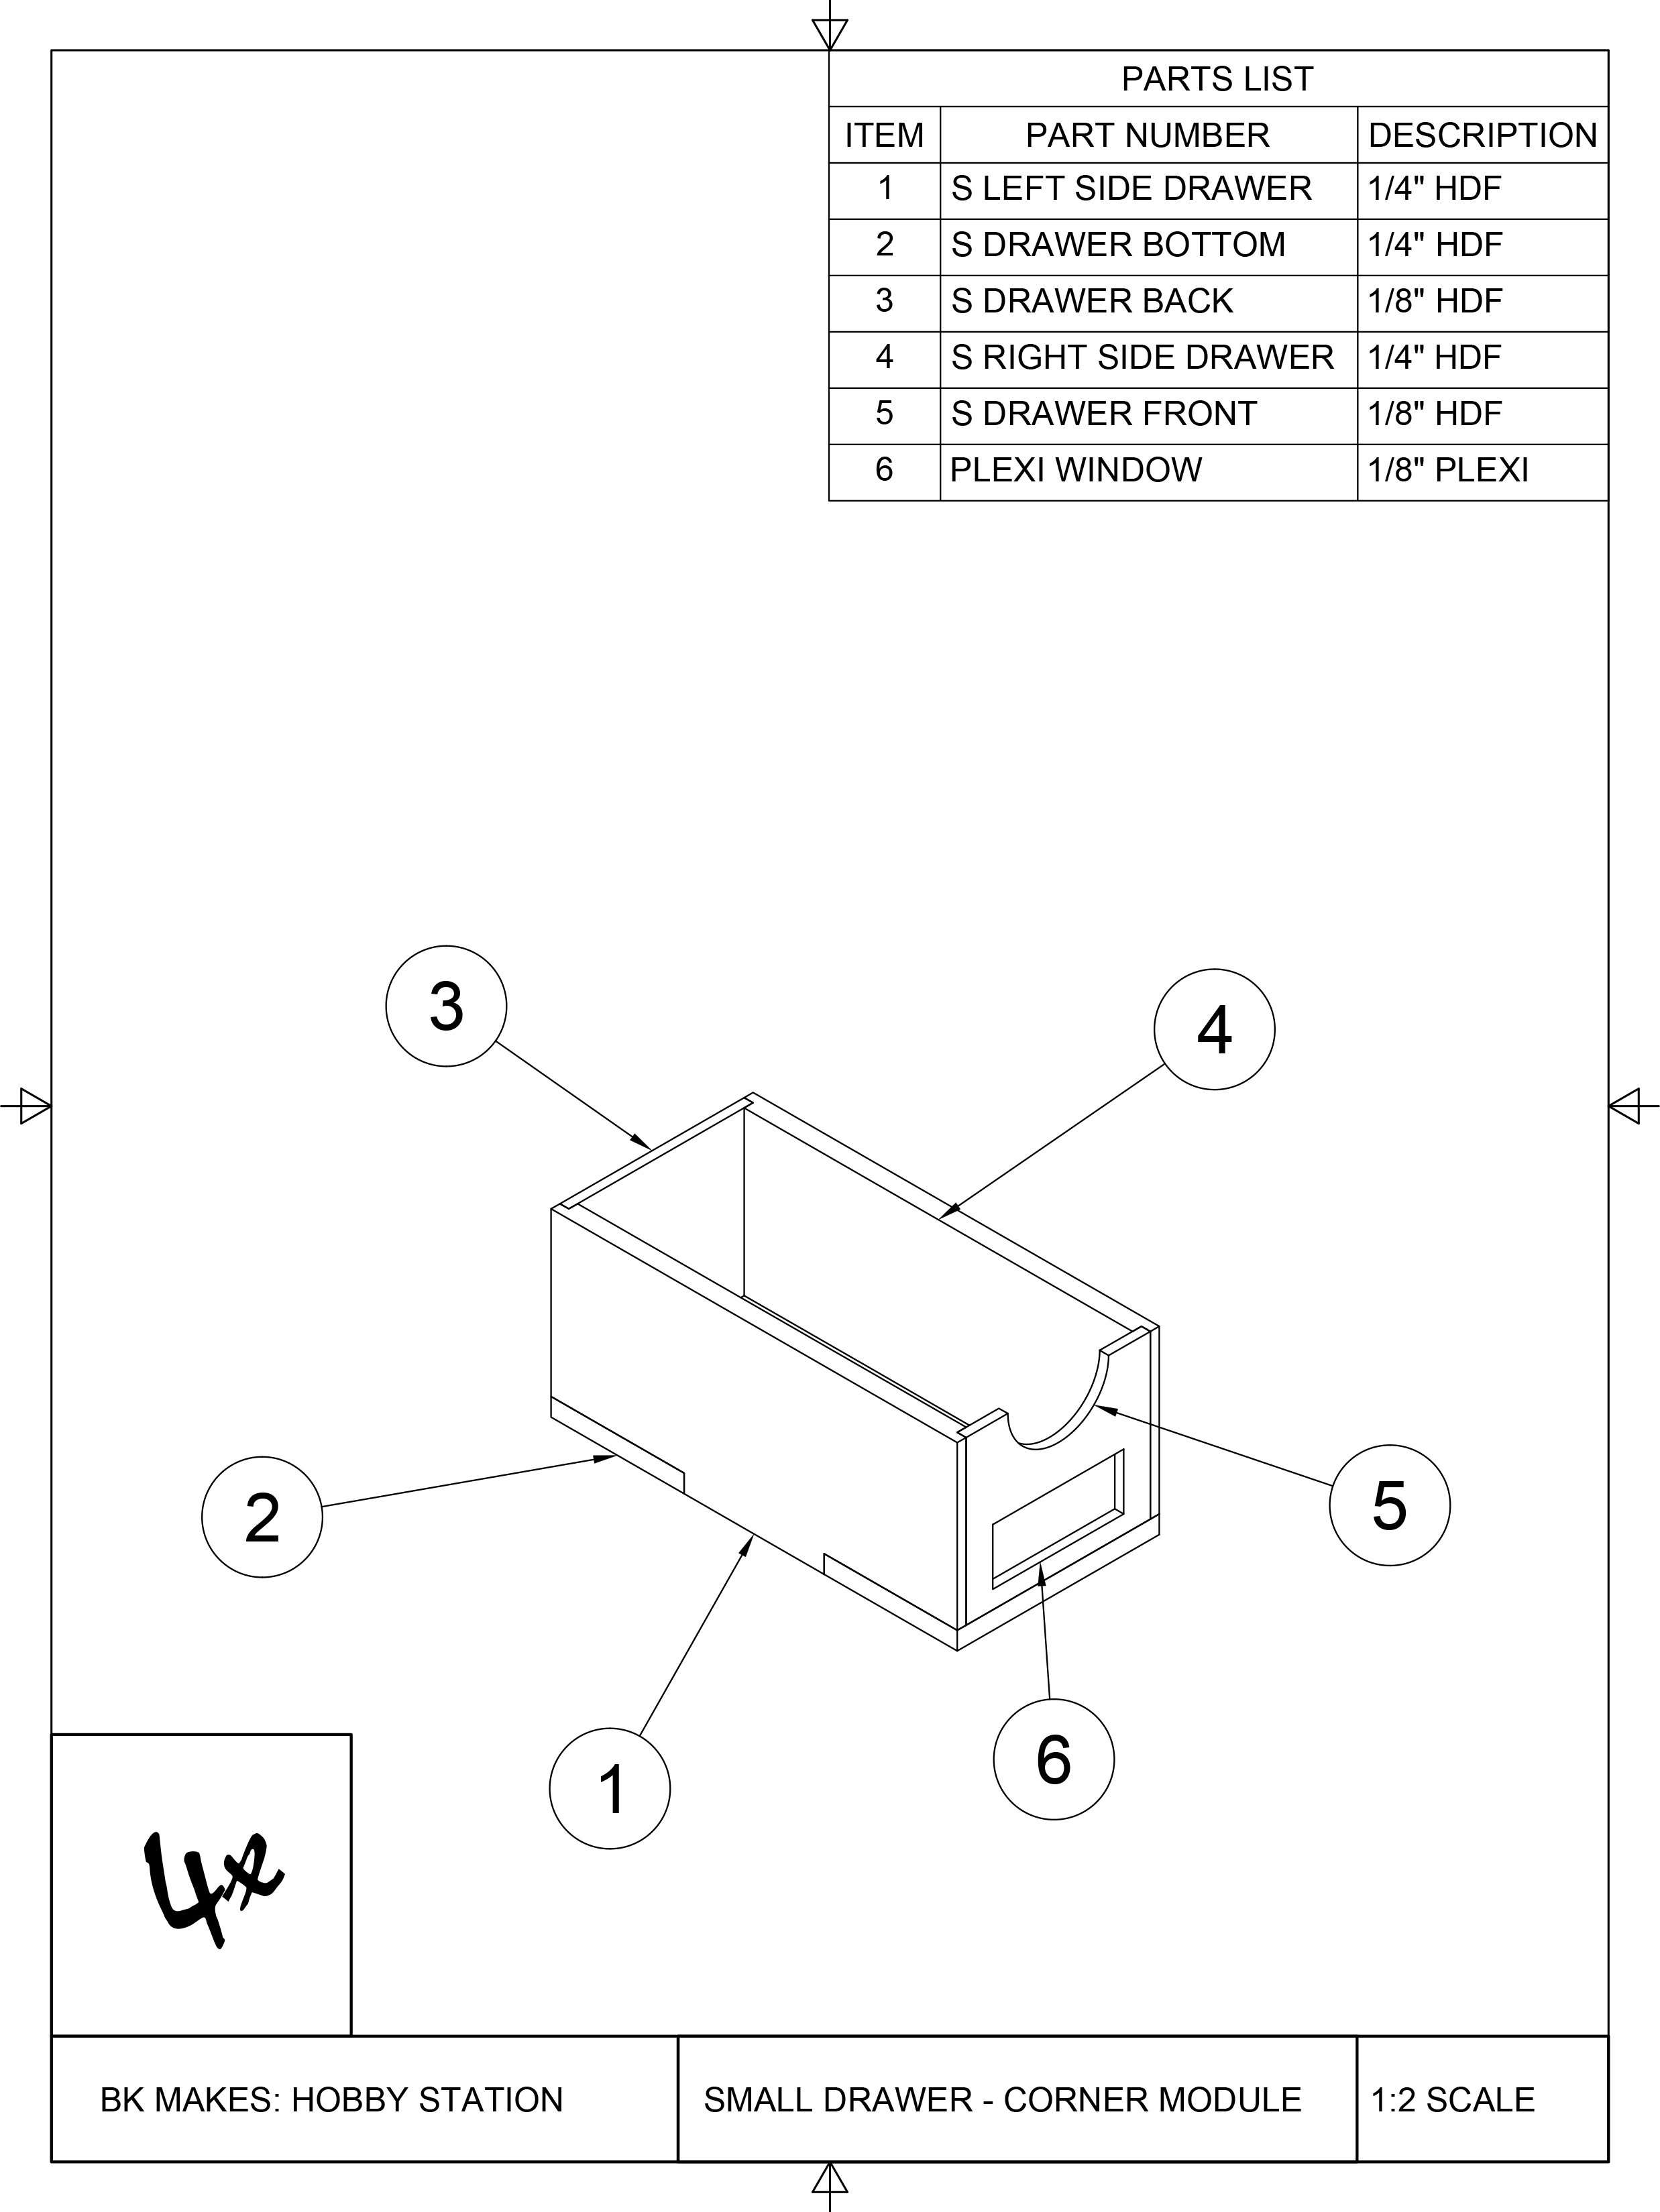 BK MAKES Small Drawer for Corner Drawer Module Assembly Sheet.jpg